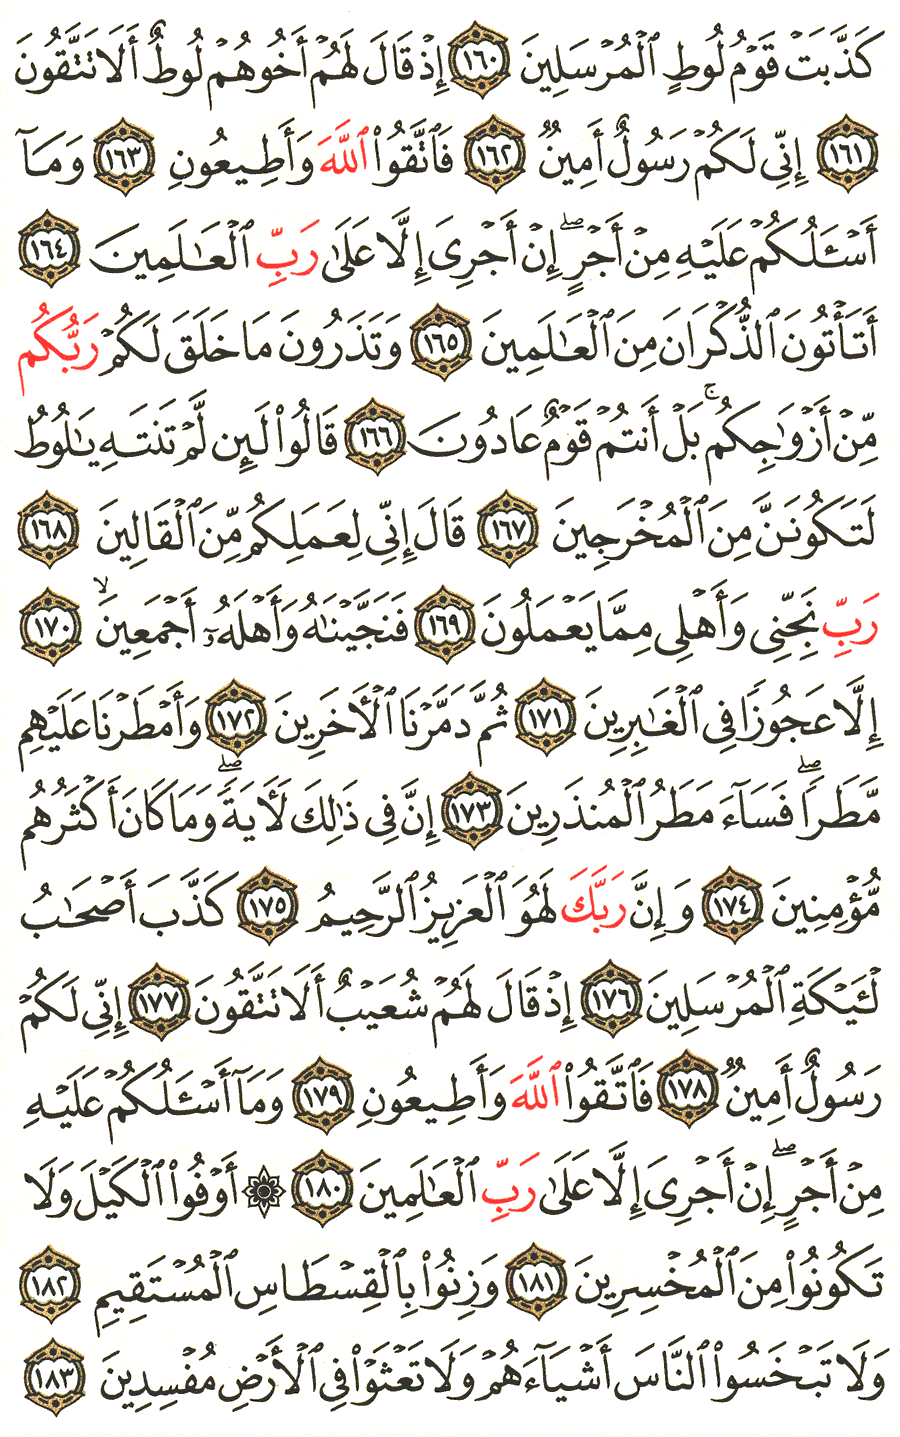 الصفحة 374 من القرآن الكريم